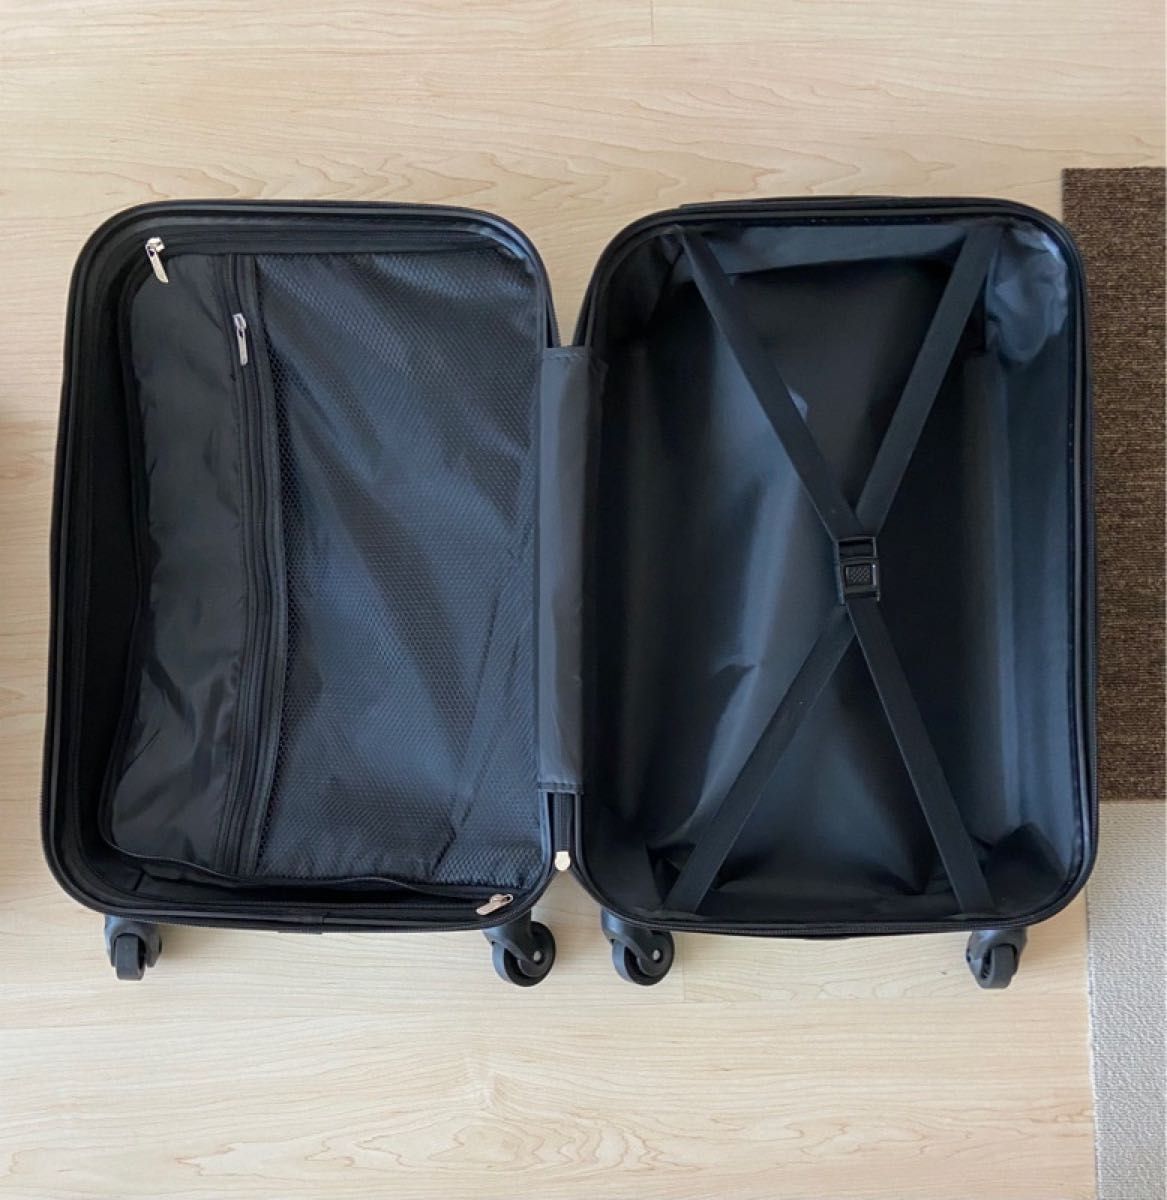 「大容量102L」新品 スーツケース Lサイズ XLサイズ相当 ネイビー  大容量 102L キャリーバッグ